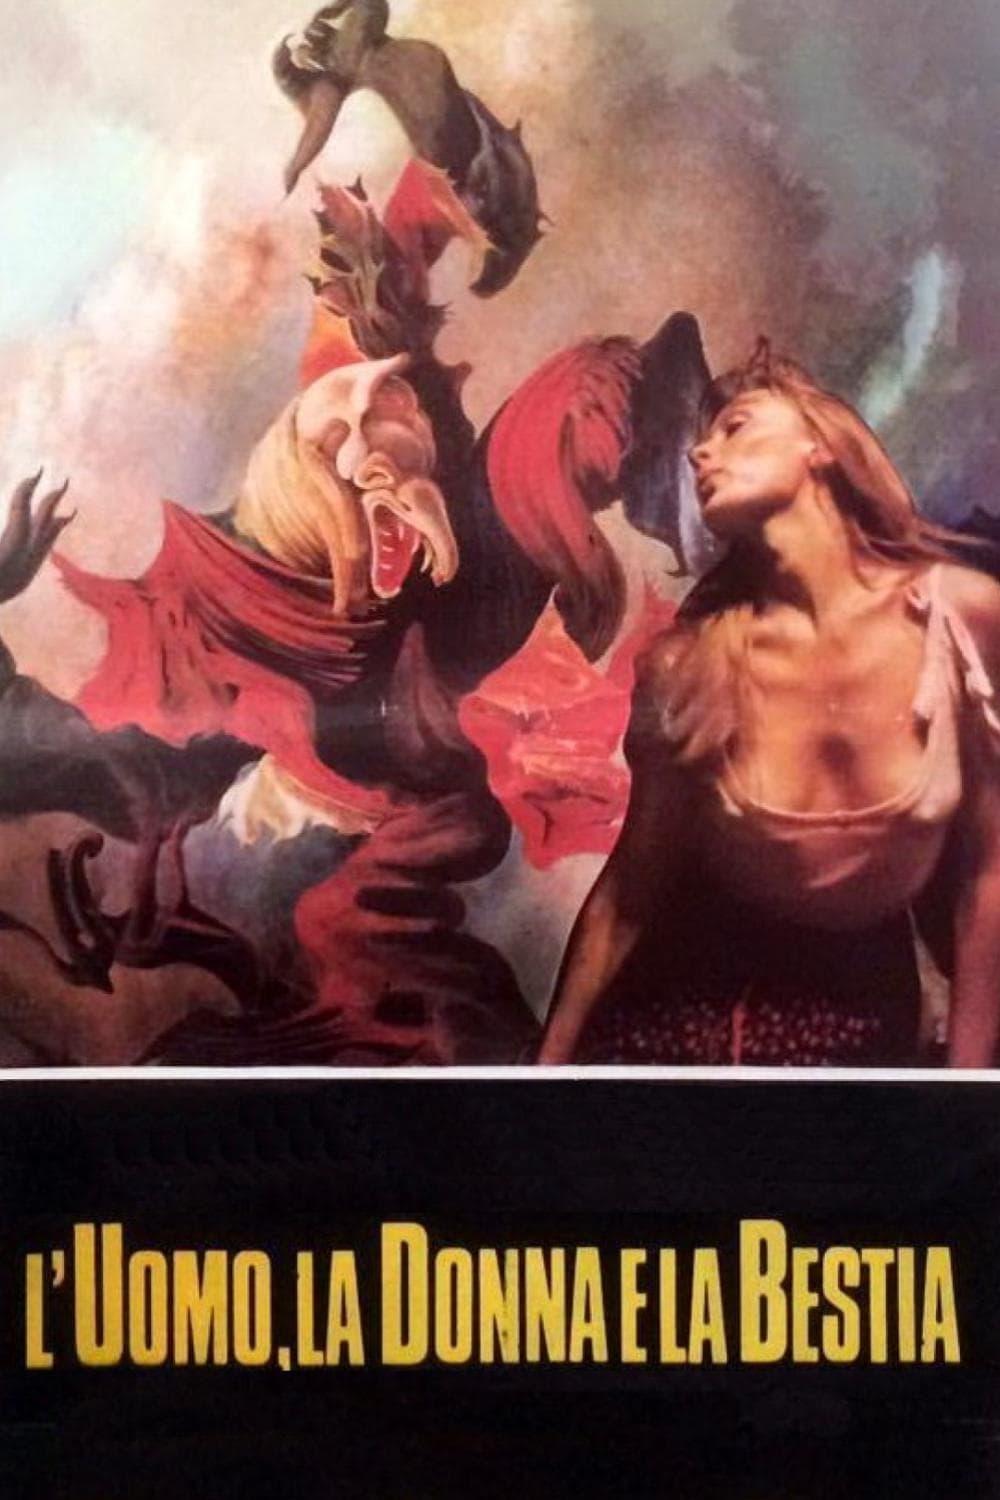 L'uomo, la donna e la bestia - Spell (Dolce mattatoio) poster